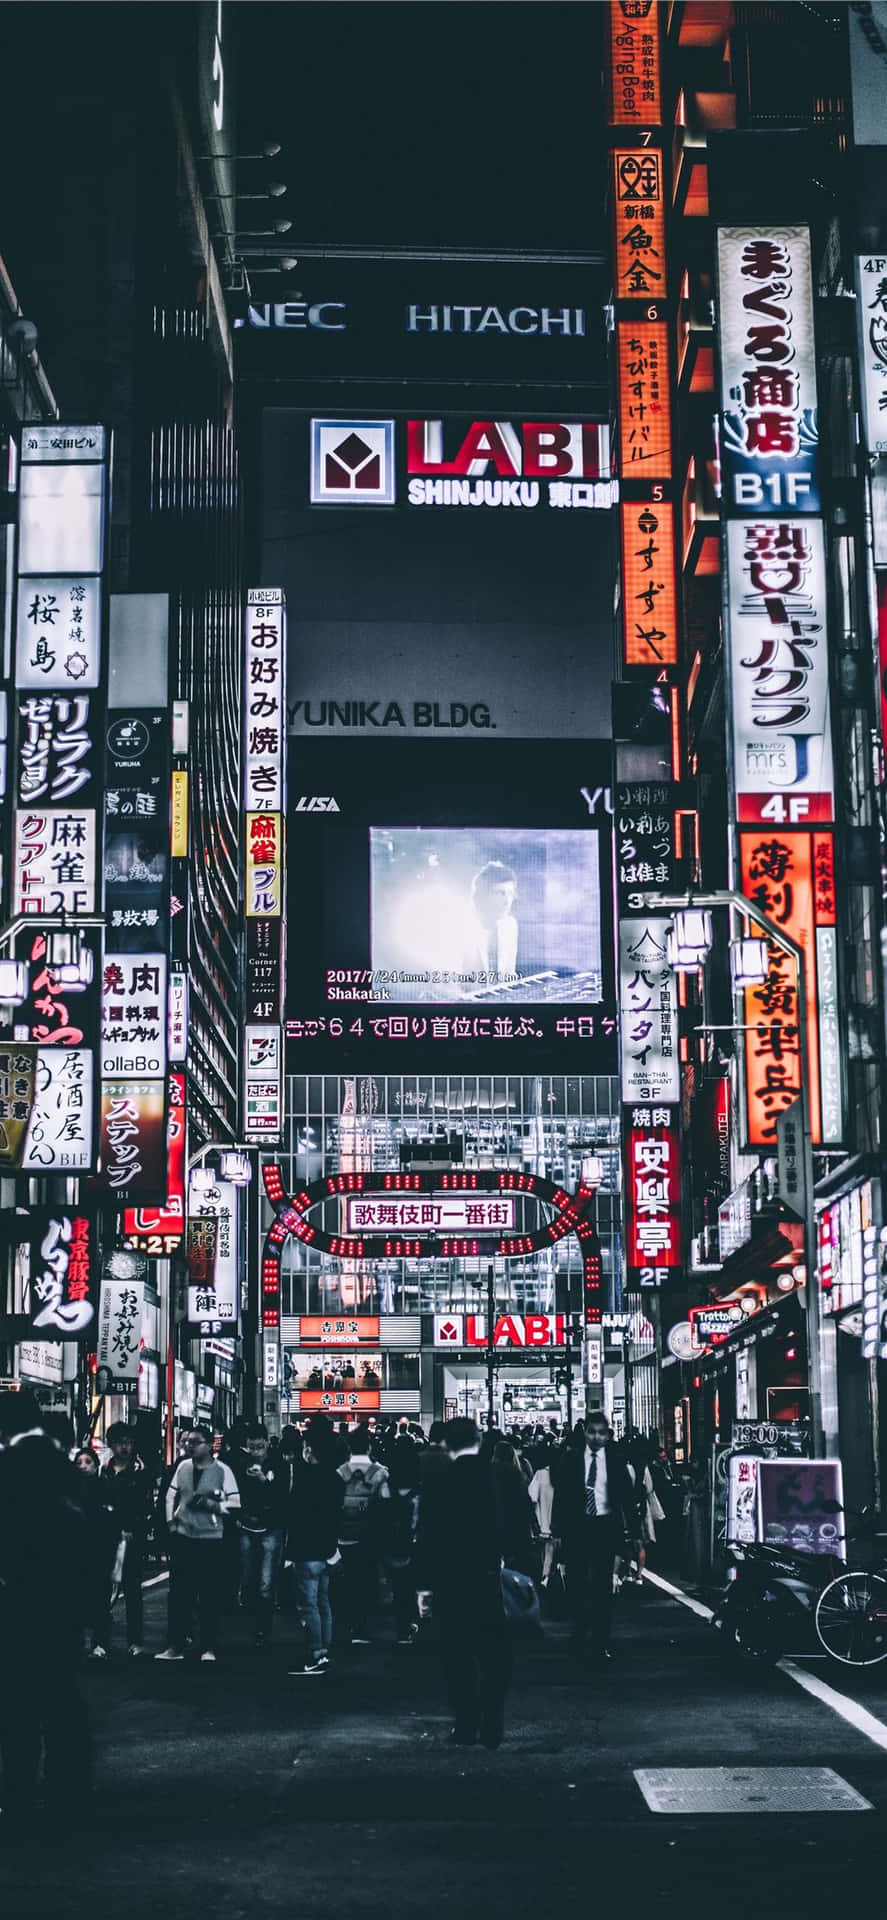 An Evening Stroll Through the Streets of Dark Japan Wallpaper